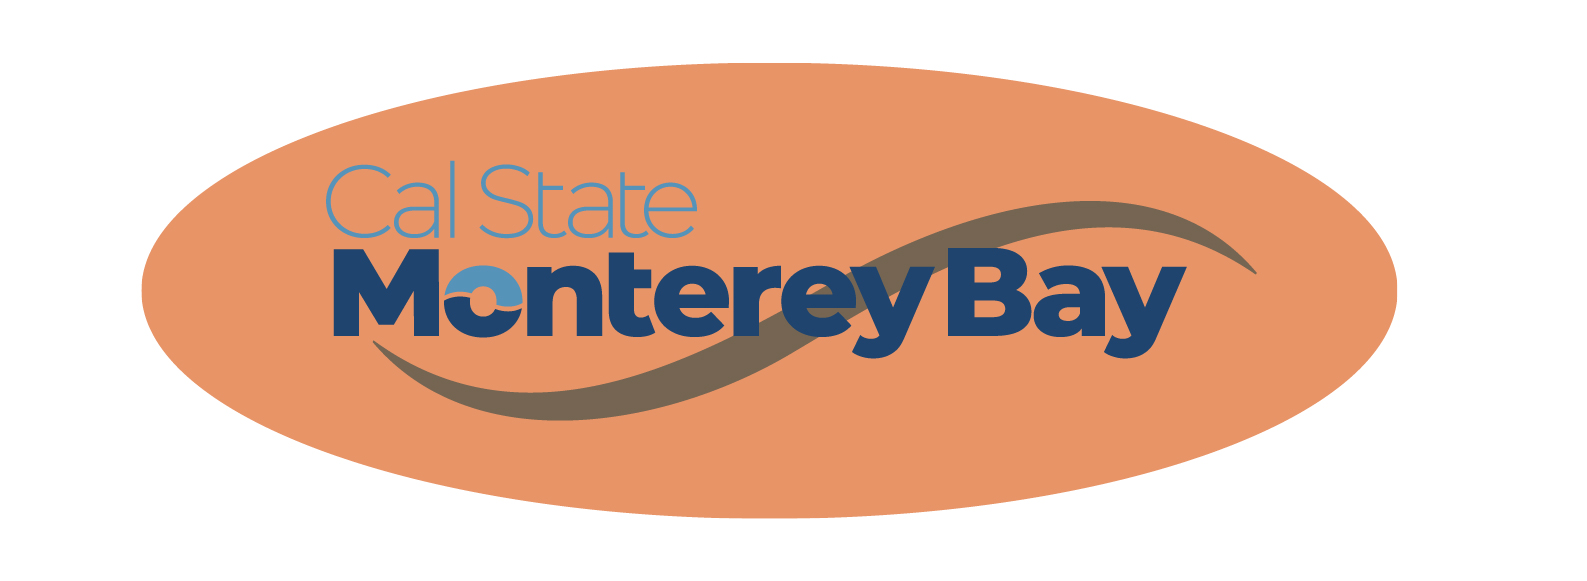 Cal State Monterey Bay Logo in orange circle